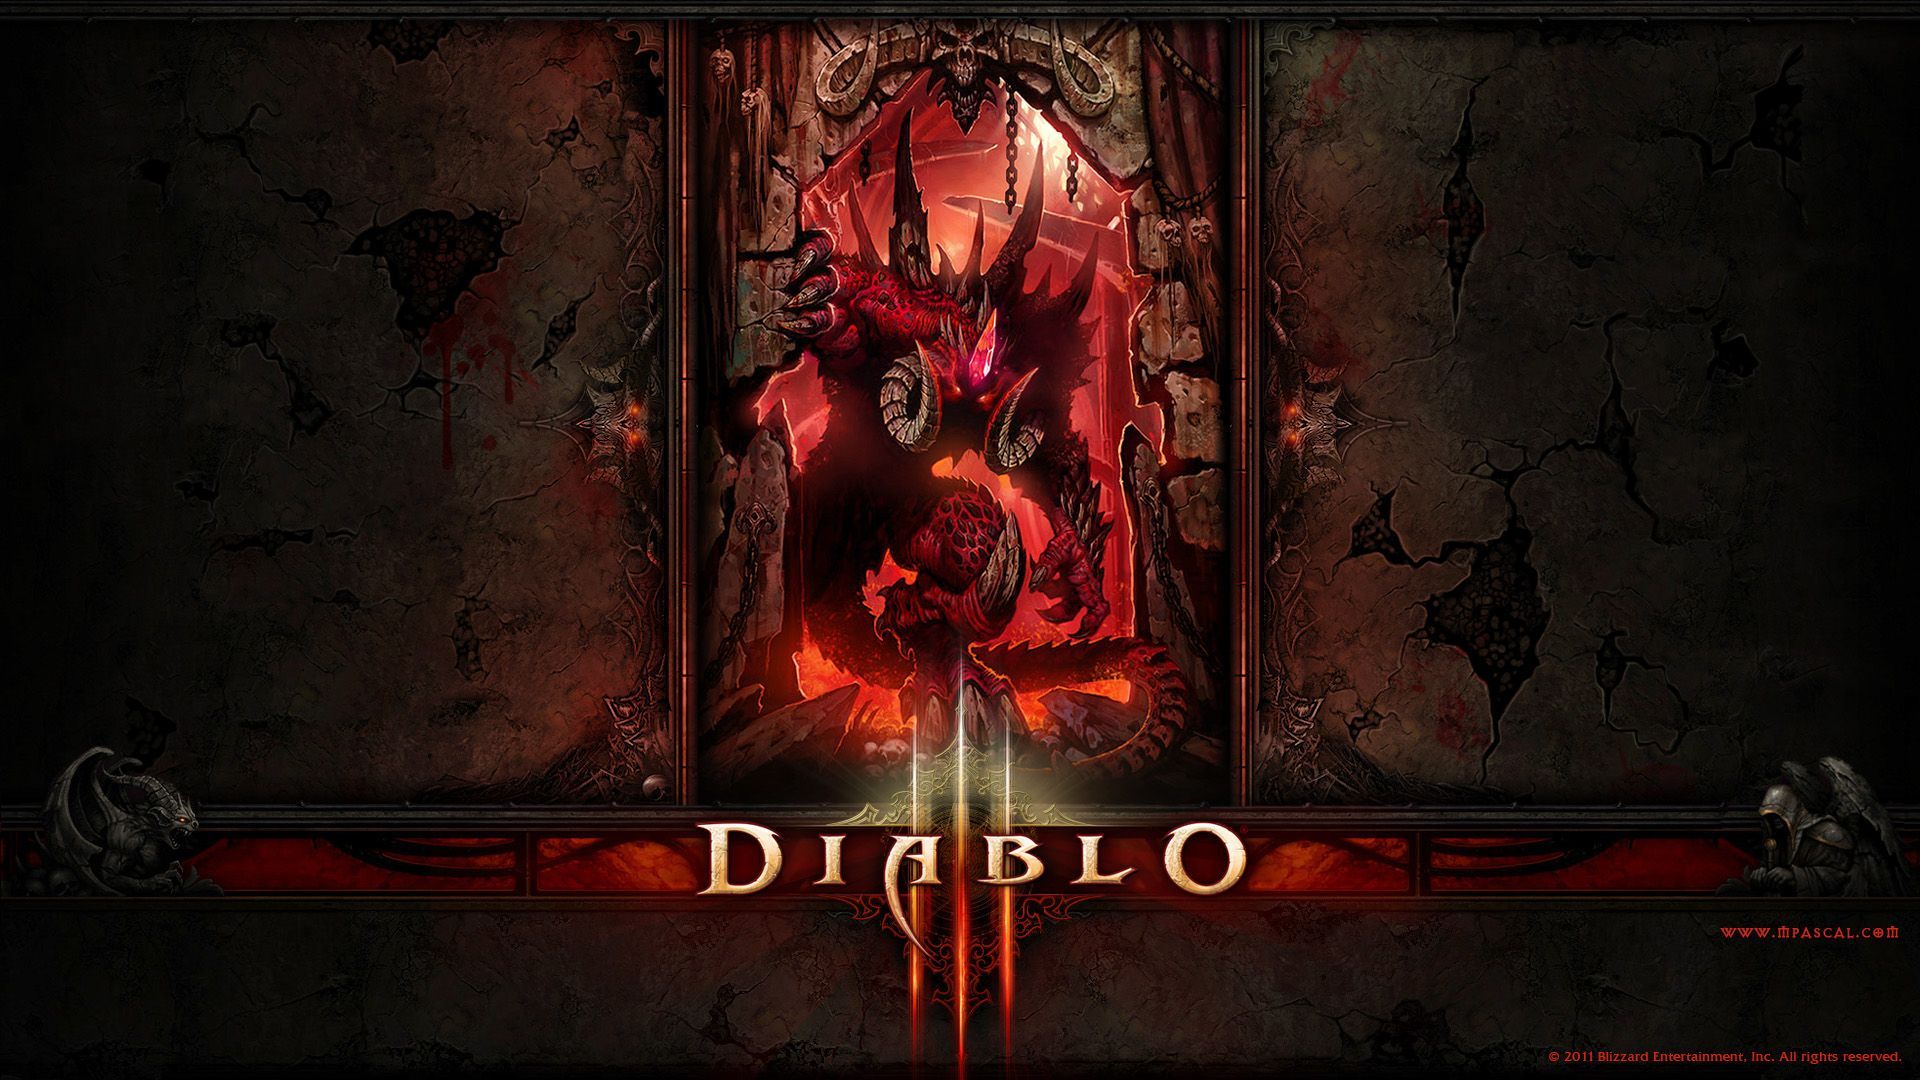 Diablo 3 Witch Doctor wallpaper by Panperkin on DeviantArt